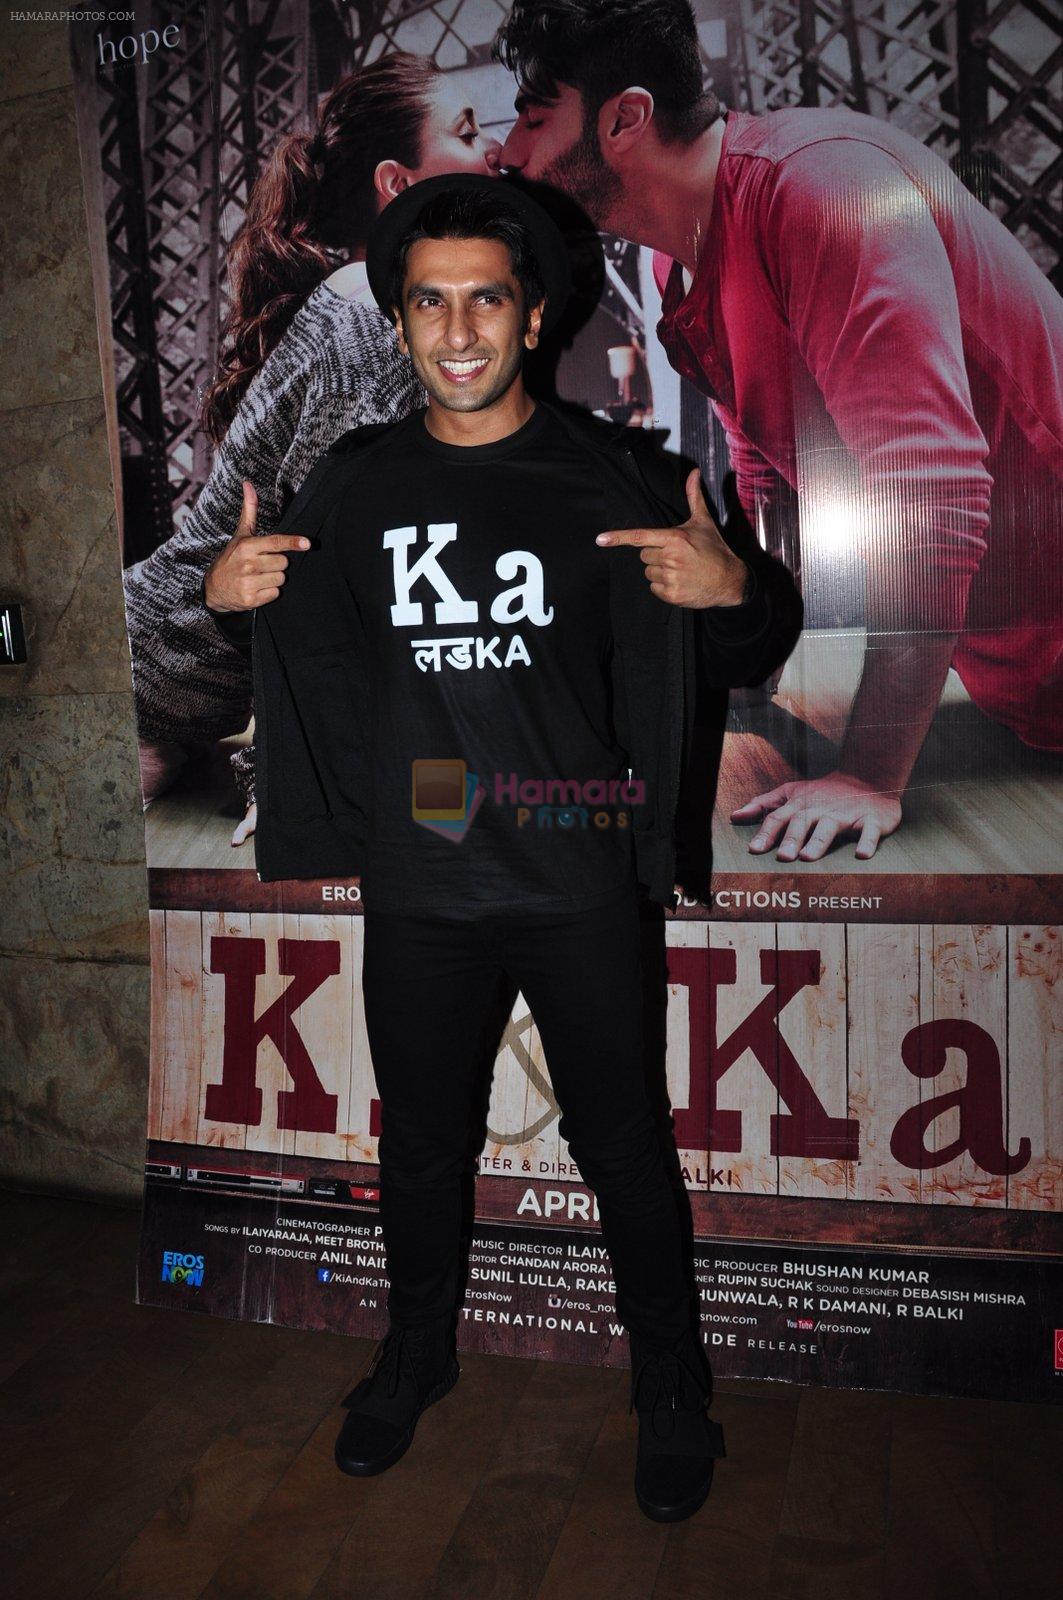 Ranveer Singh at Ki and Ka screening on 30th March 2016